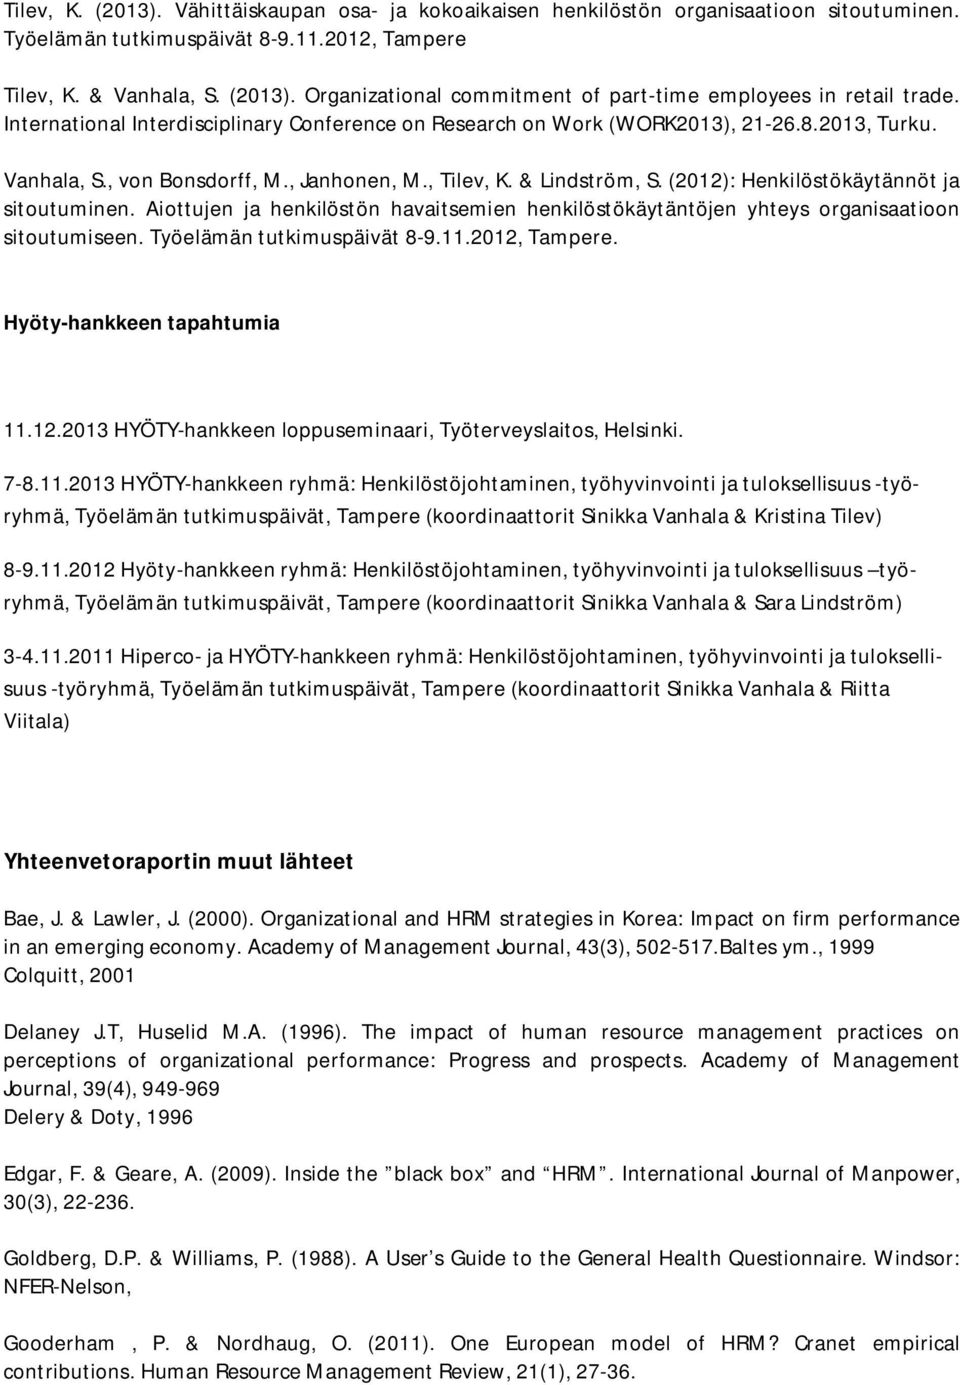 (2012): Henkilöstökäytännöt ja sitoutuminen. Aiottujen ja henkilöstön havaitsemien henkilöstökäytäntöjen yhteys organisaatioon sitoutumiseen. Työelämän tutkimuspäivät 8-9.11.2012, Tampere.